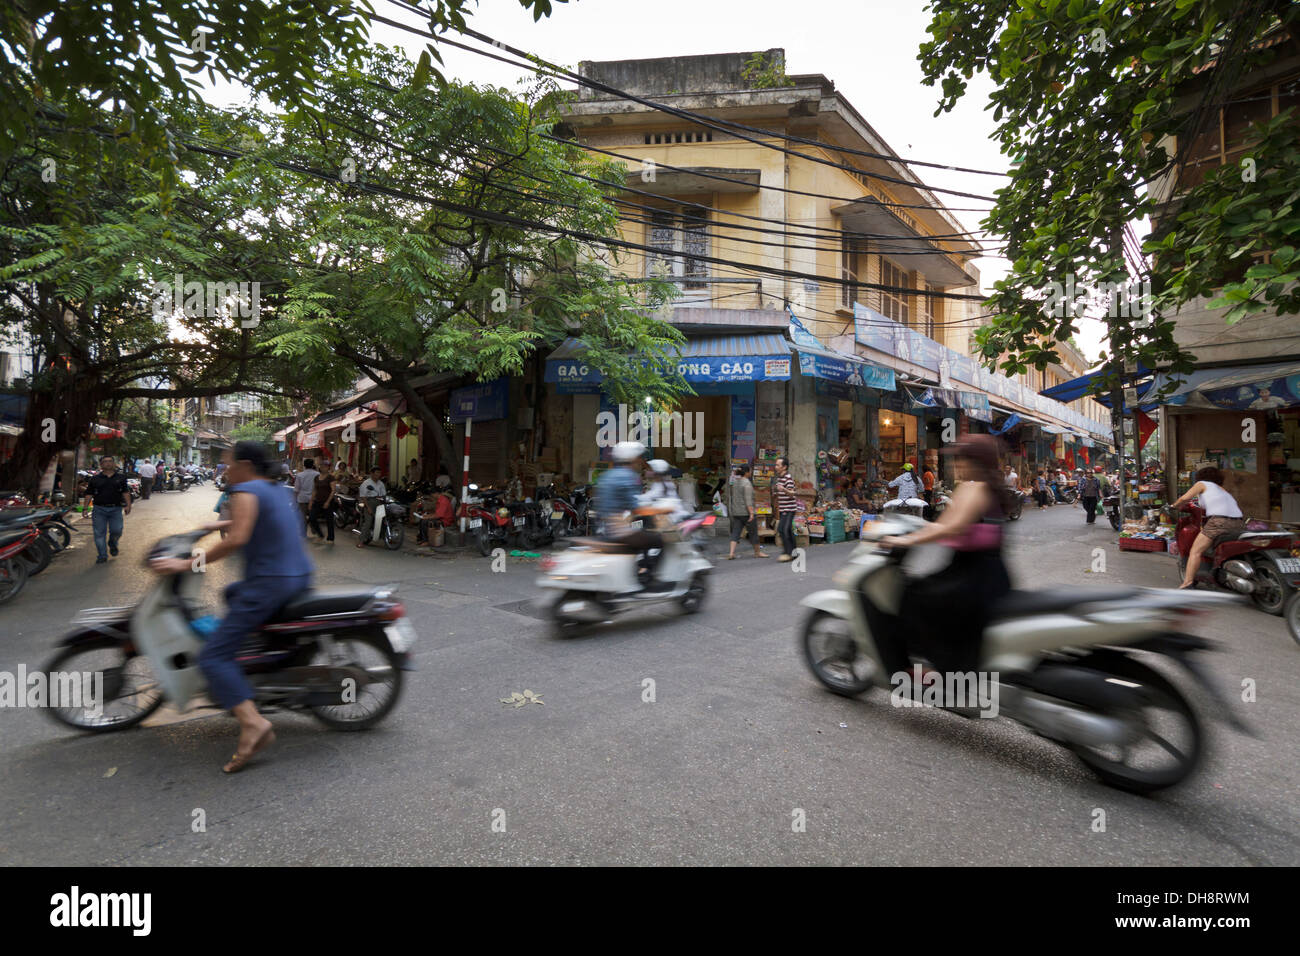 Schuss von viele Roller und Mopeds im alten Viertel von Hanoi, längere Belichtungszeit fängt Bewegung von Rollern. Stockfoto